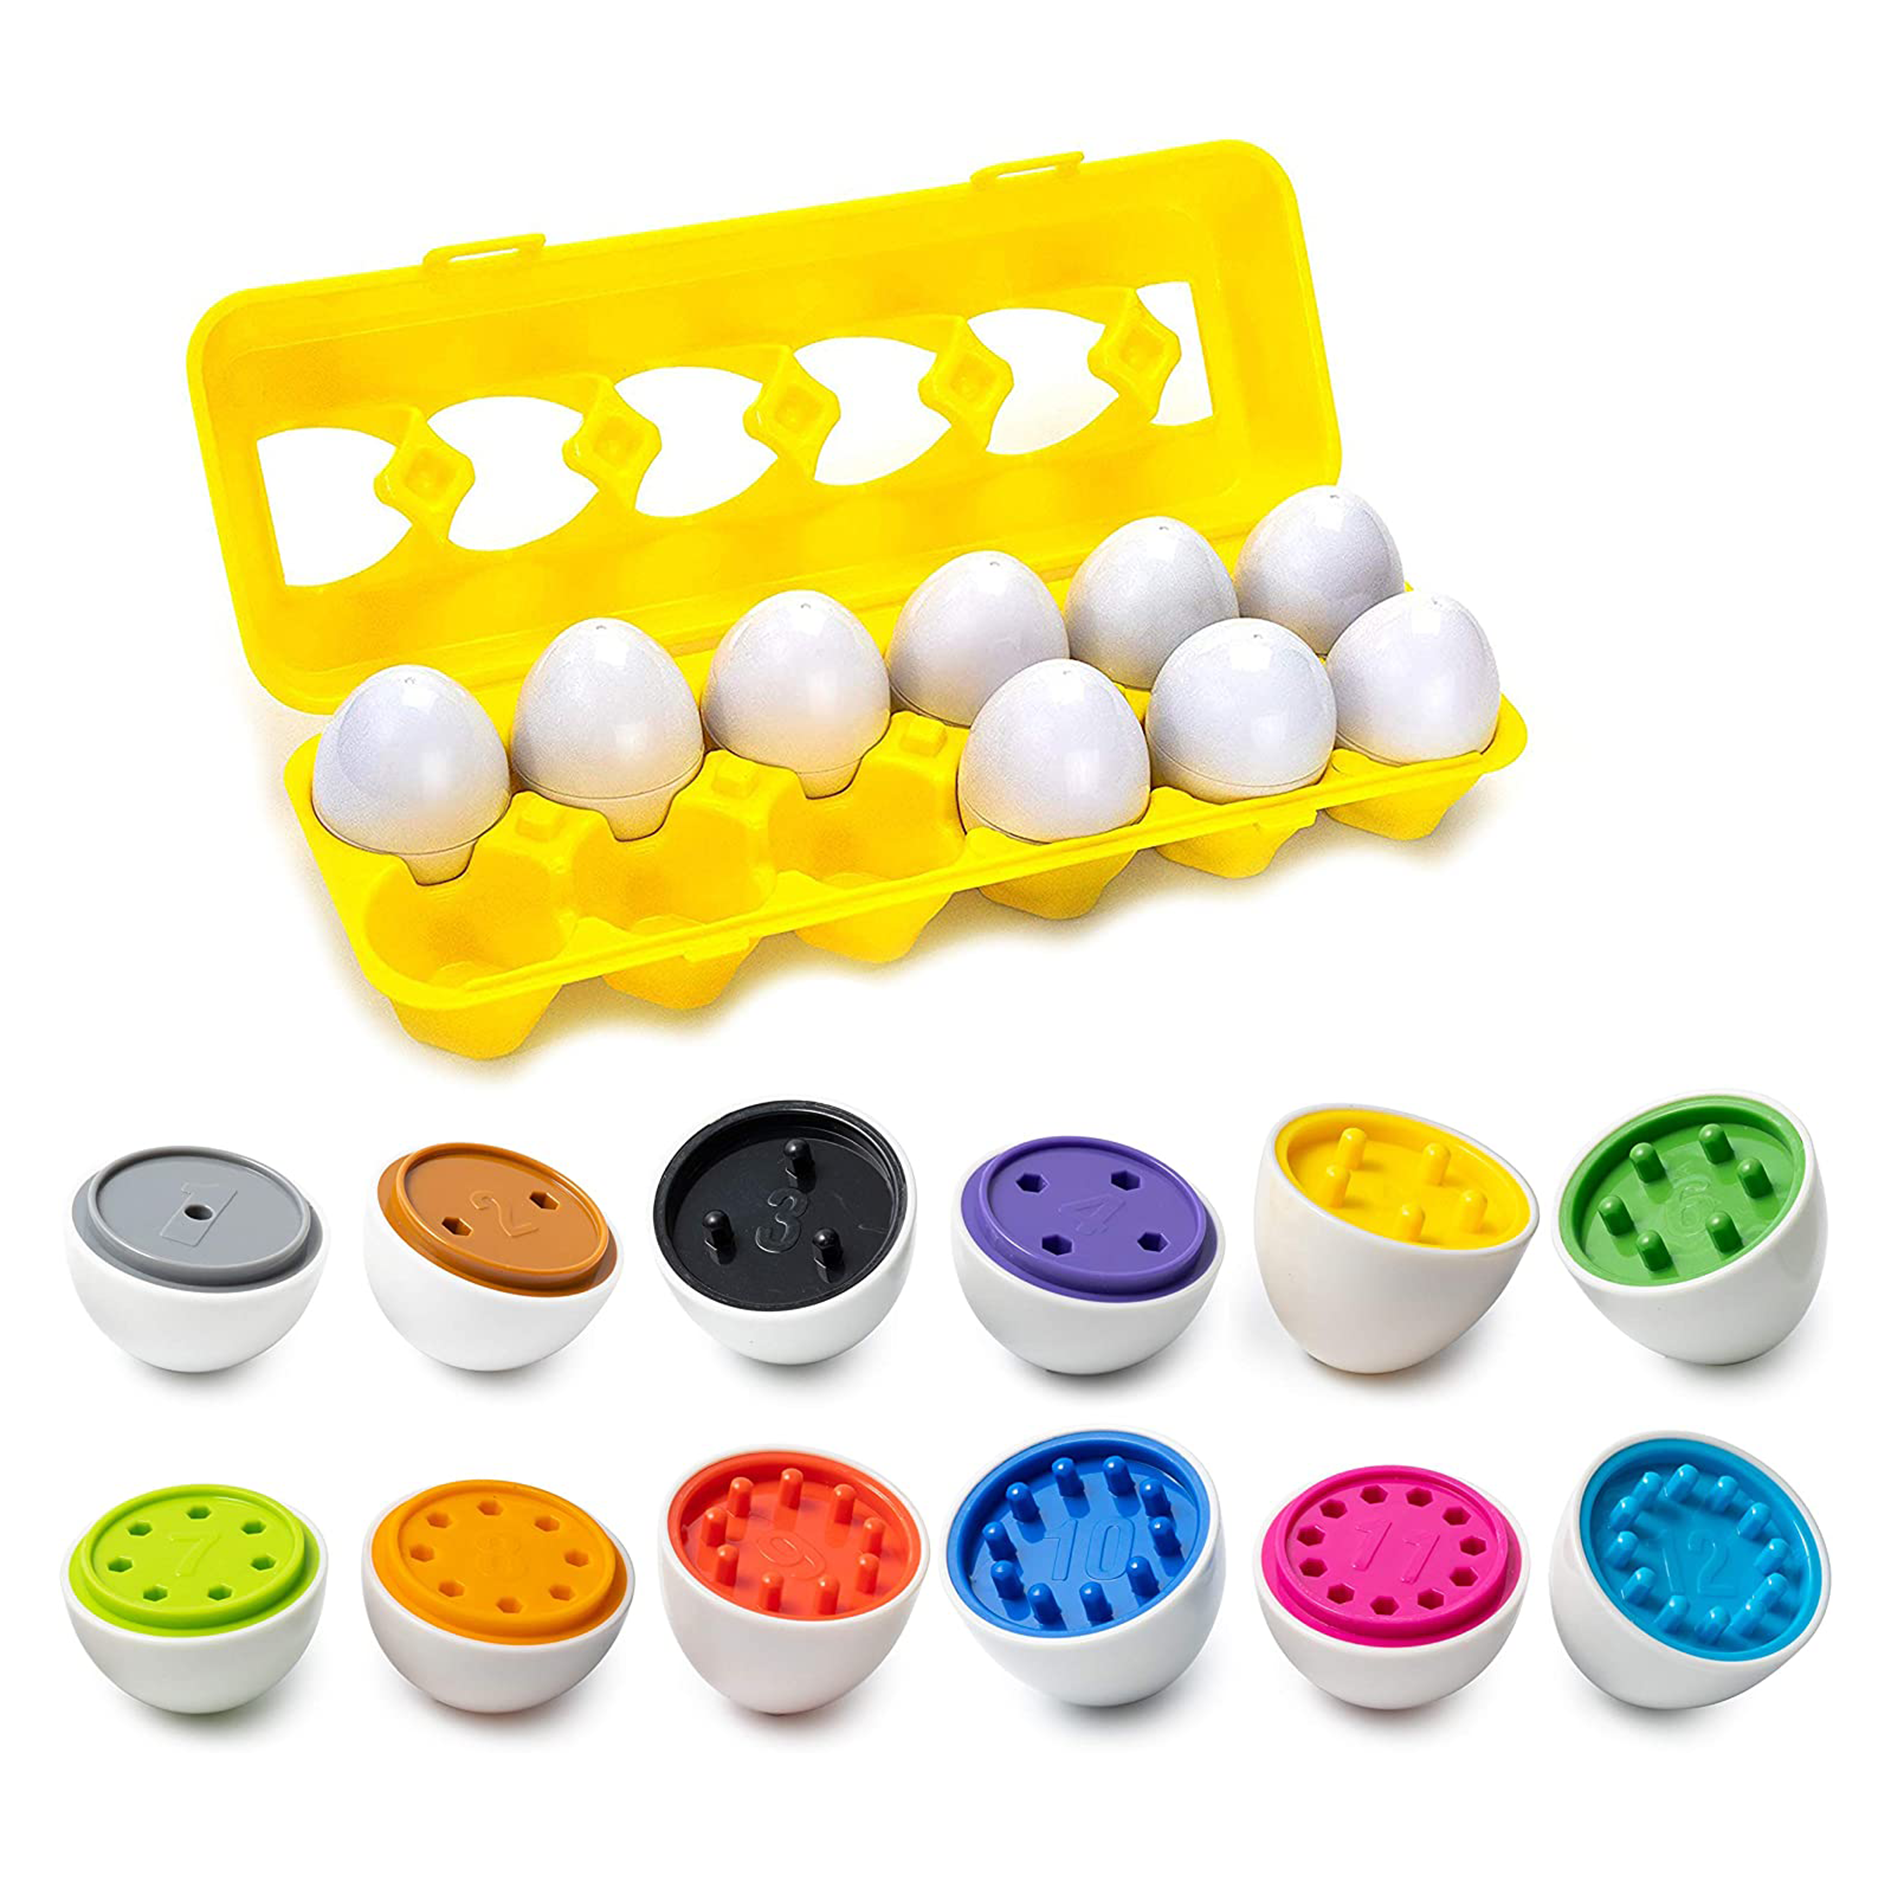 Sorting Eggs